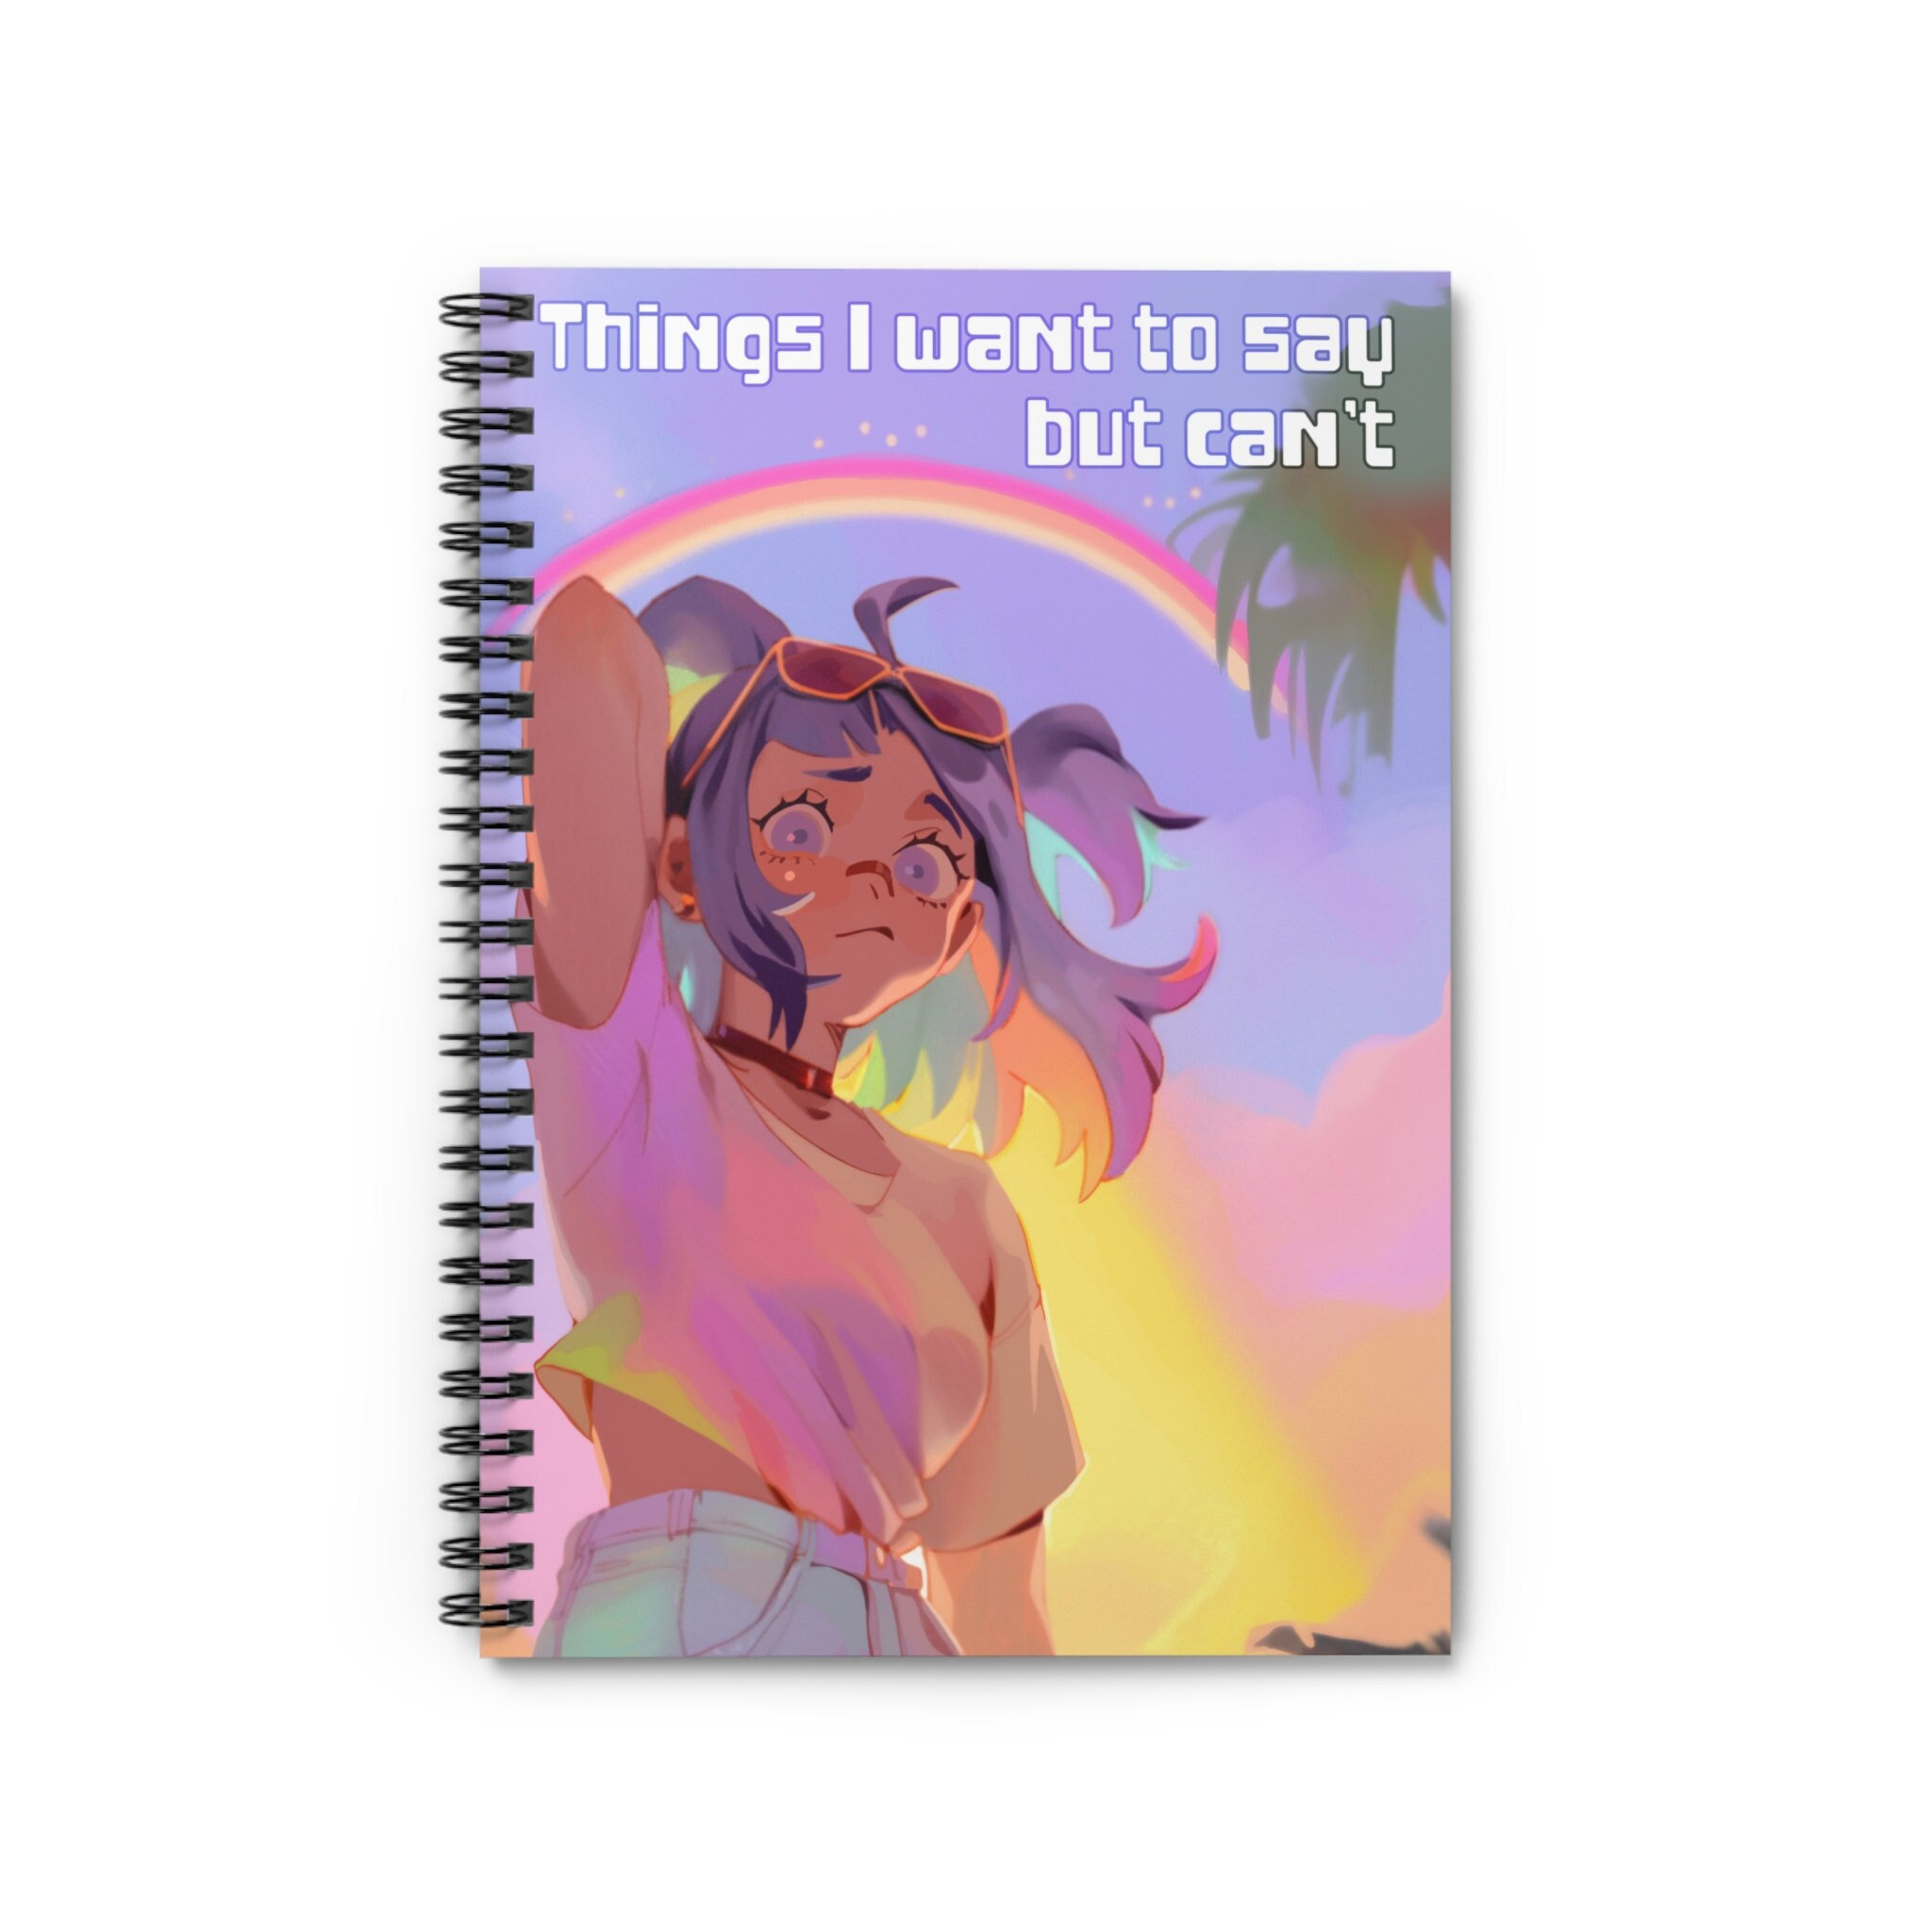 Funny & Cute Pop-Art Notebook - Rainbow Anime Aesthetic